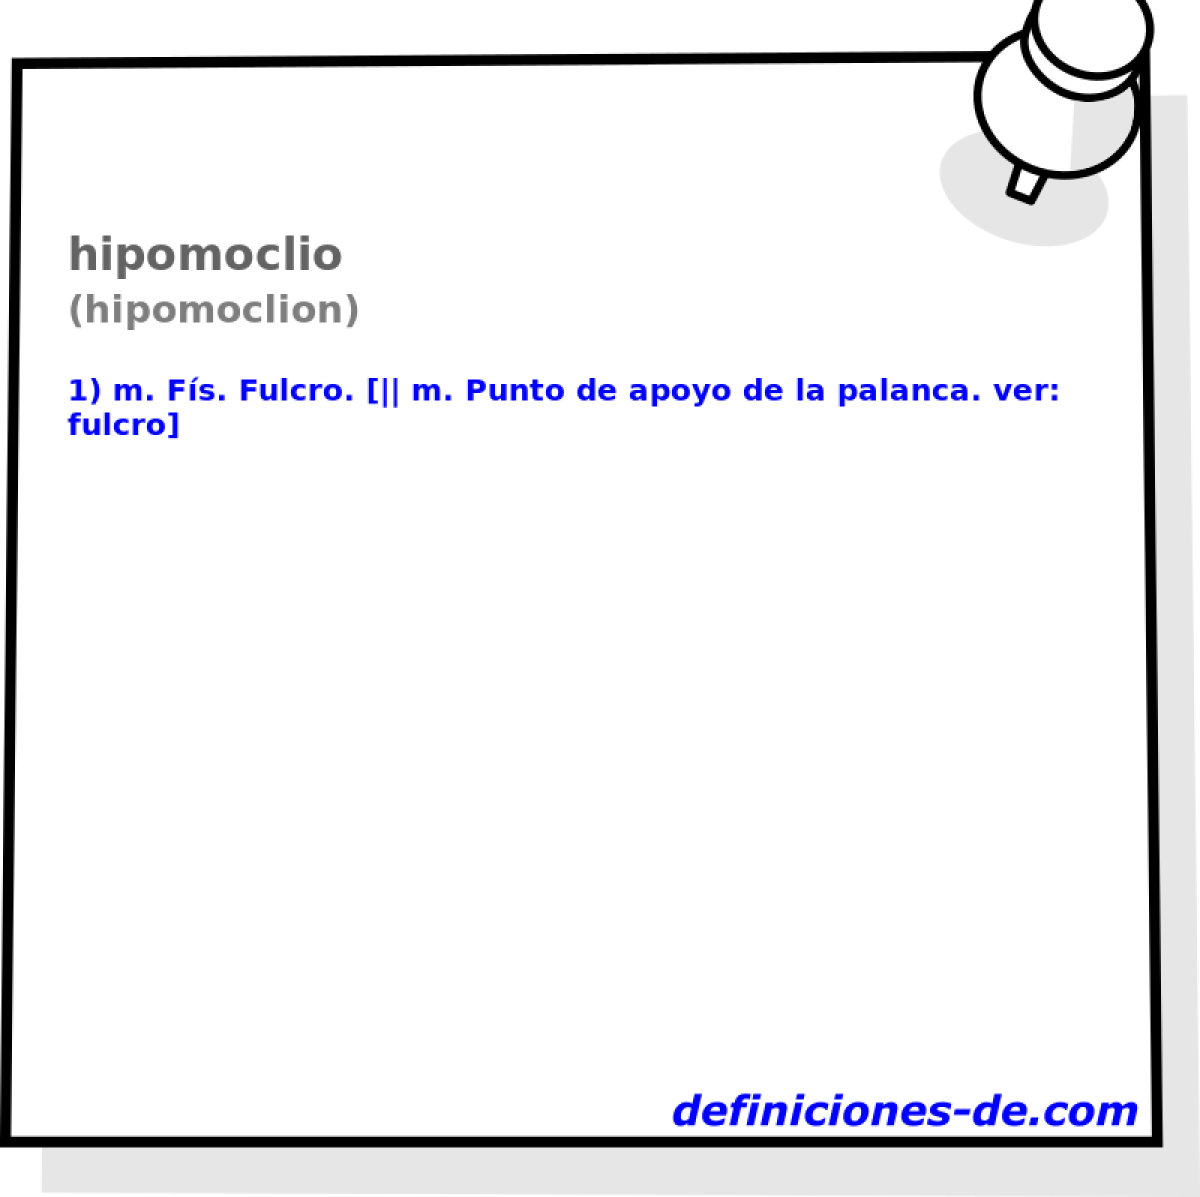 hipomoclio (hipomoclion)